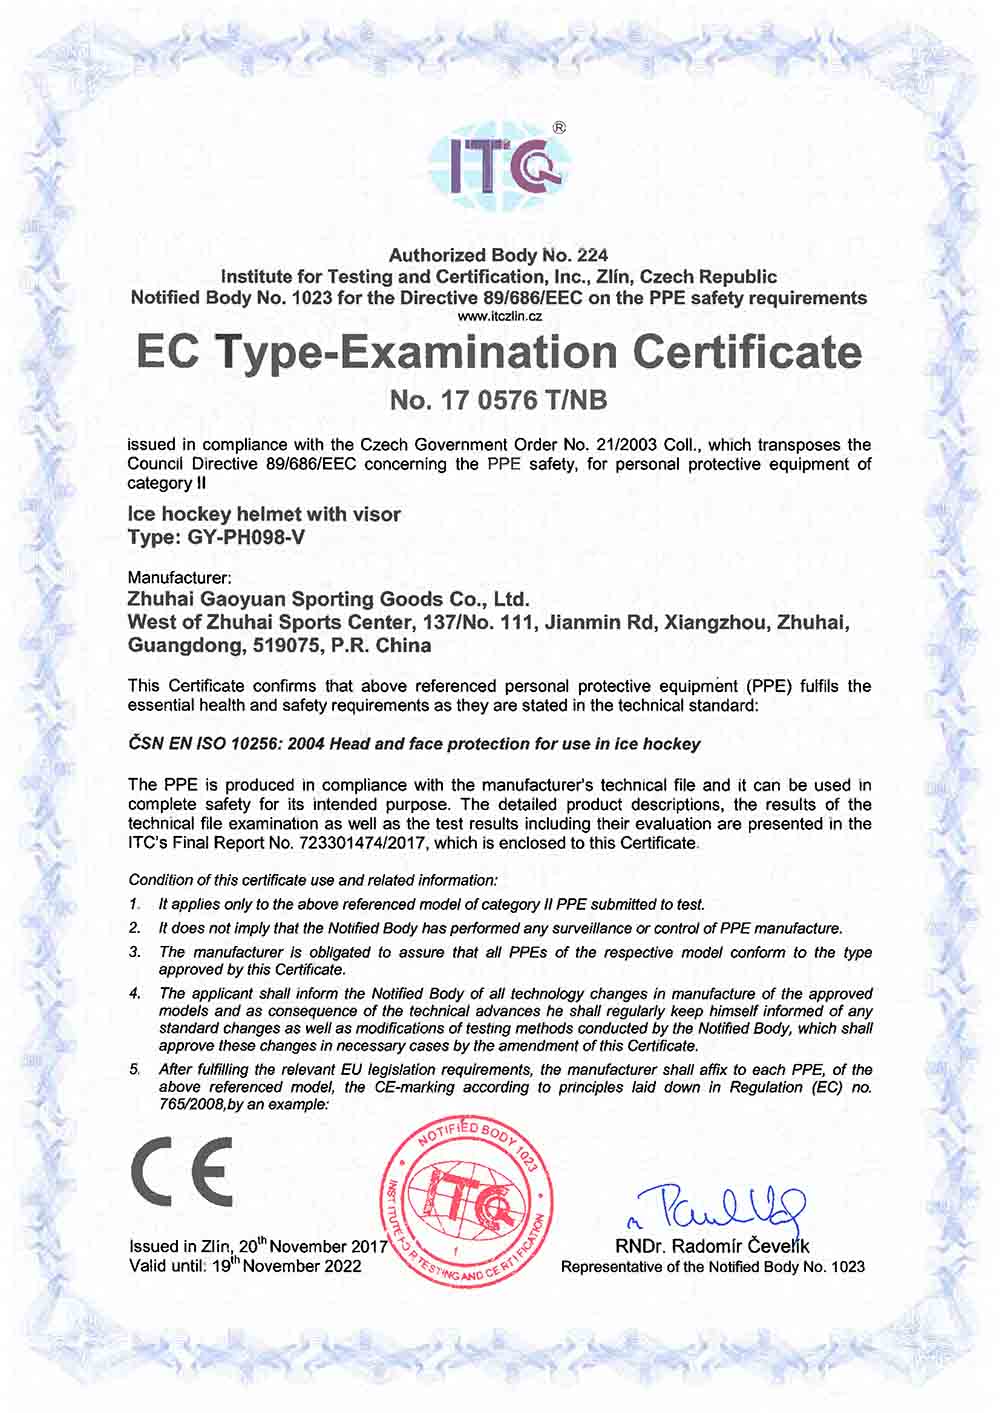 CE-Zertifikat GY-PH098-V